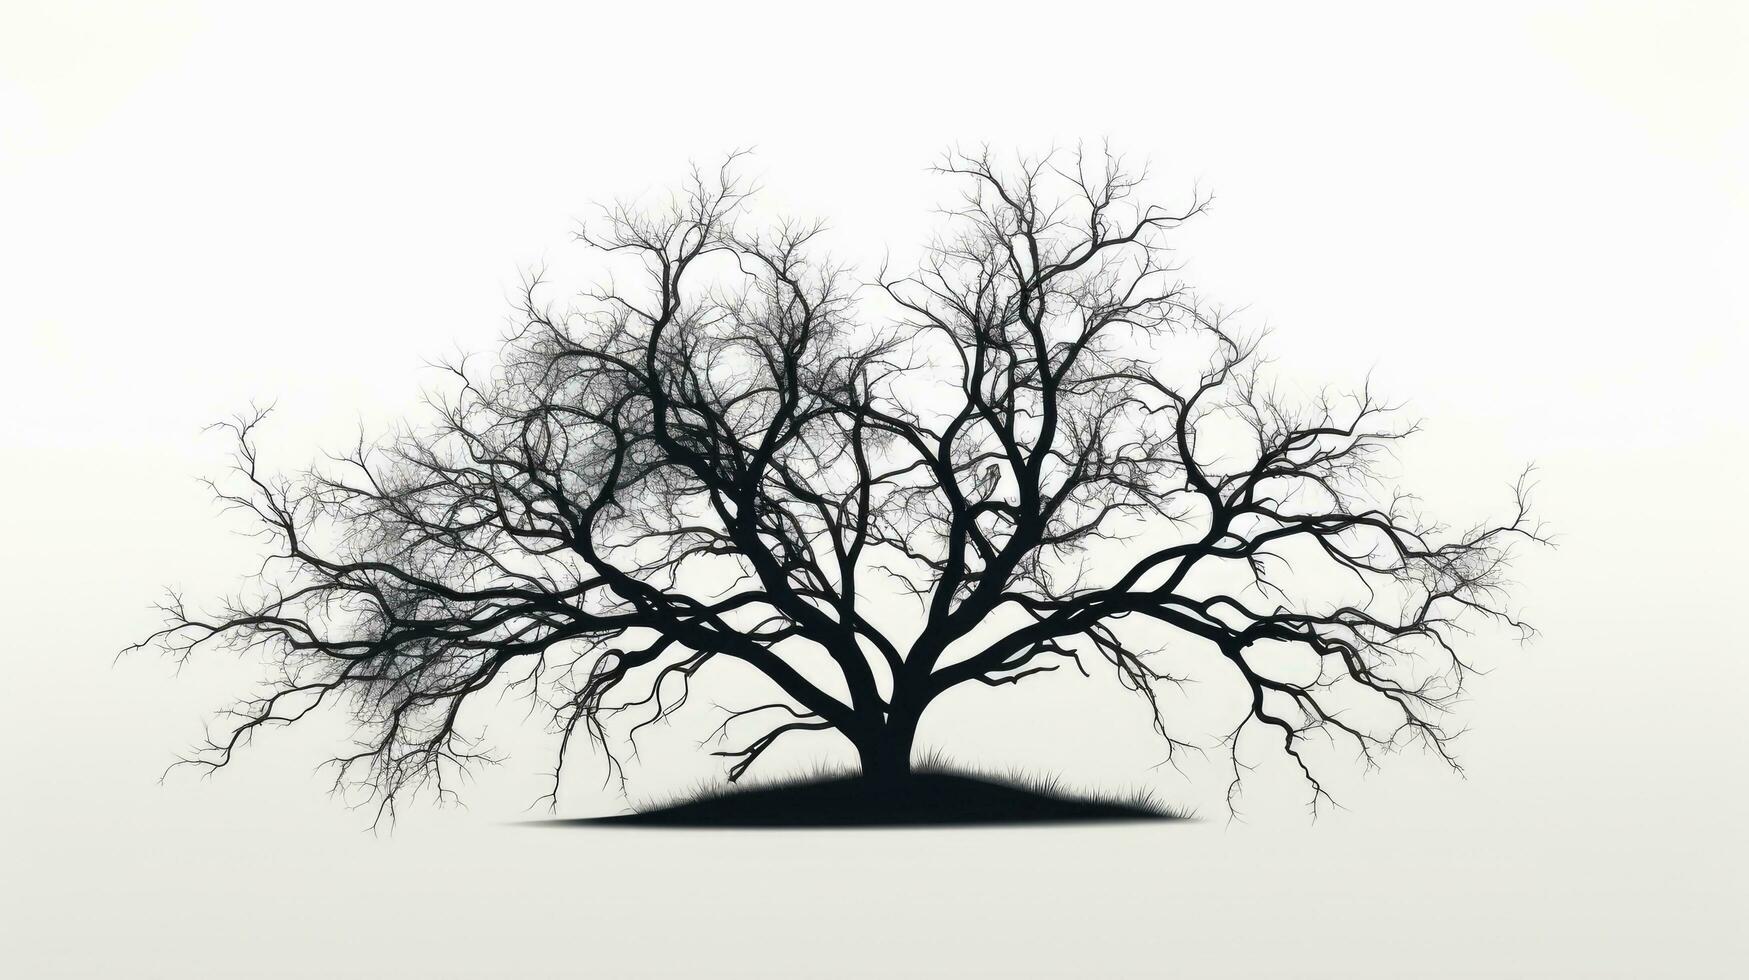 solitário Preto árvore em uma branco fundo foto